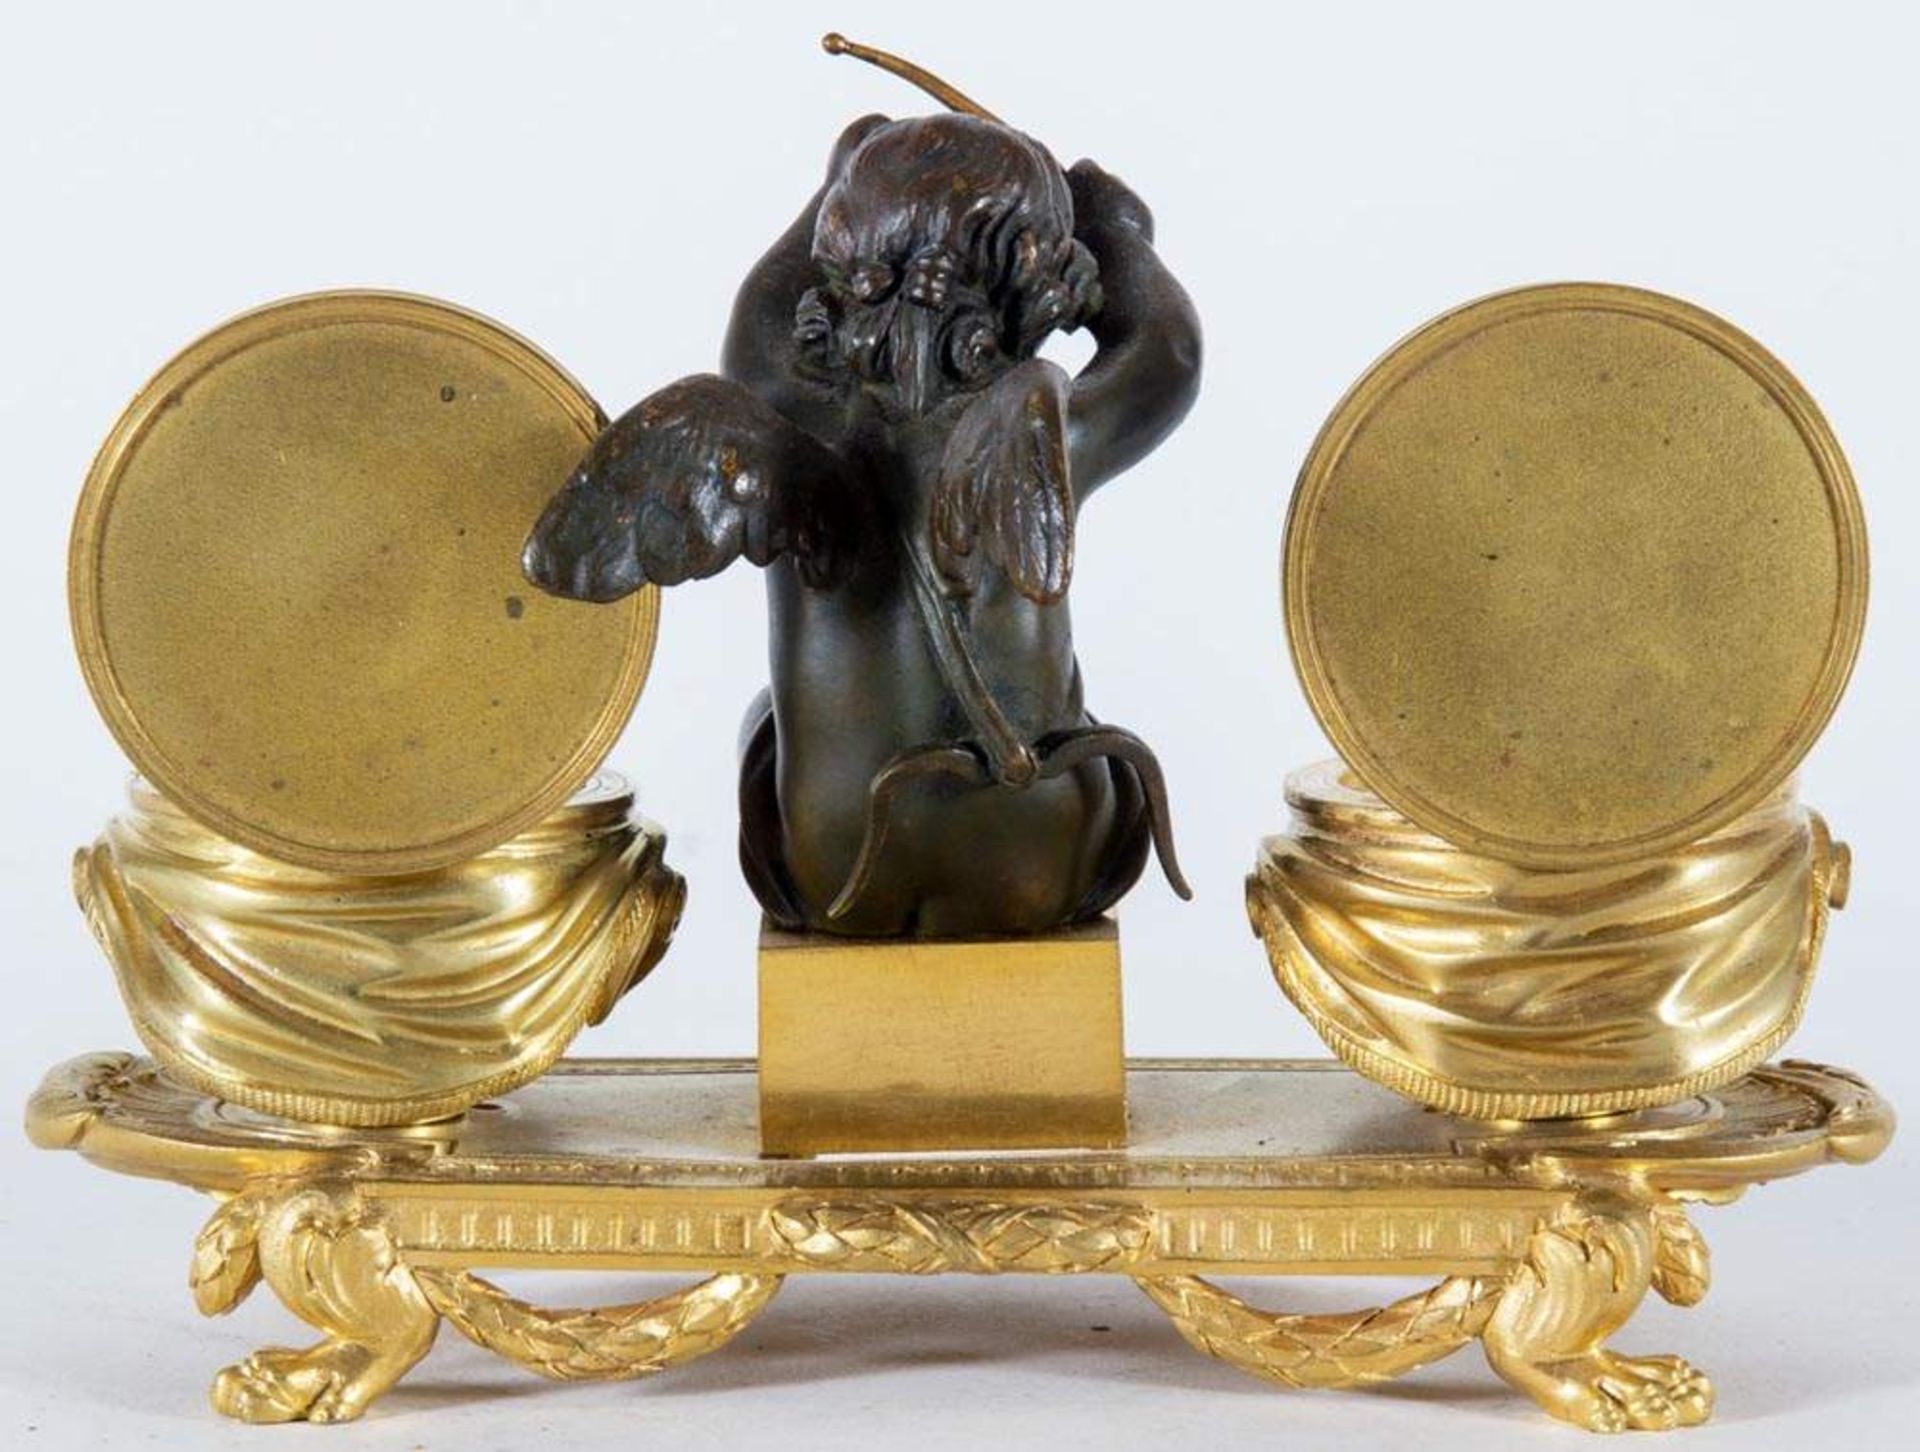 Feine Schreibtischgarnitur. Bronze, teilweise vergoldet. Historismus, 19. Jhd. Tintenfässer fehlend. - Image 5 of 5